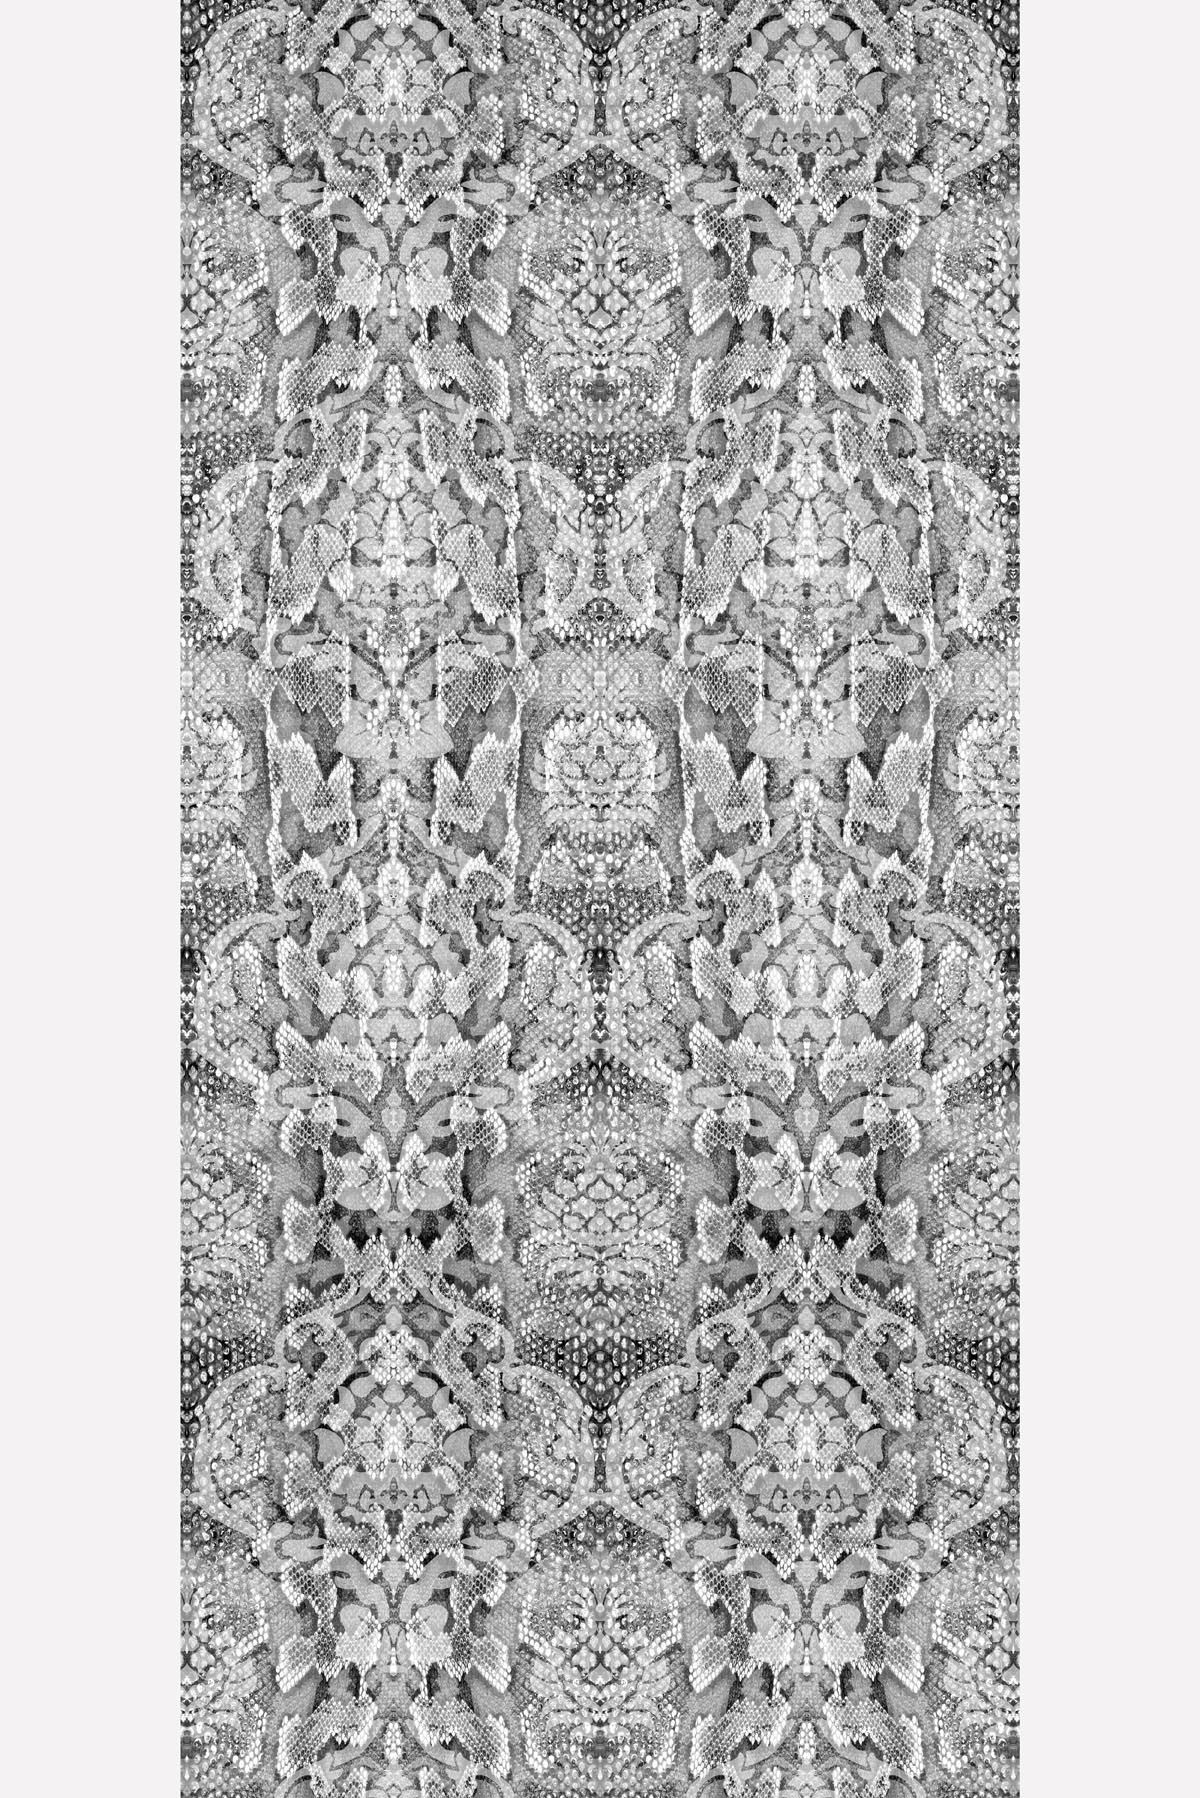 snakeskin wallpaper,pattern,grey,design,silver,beige